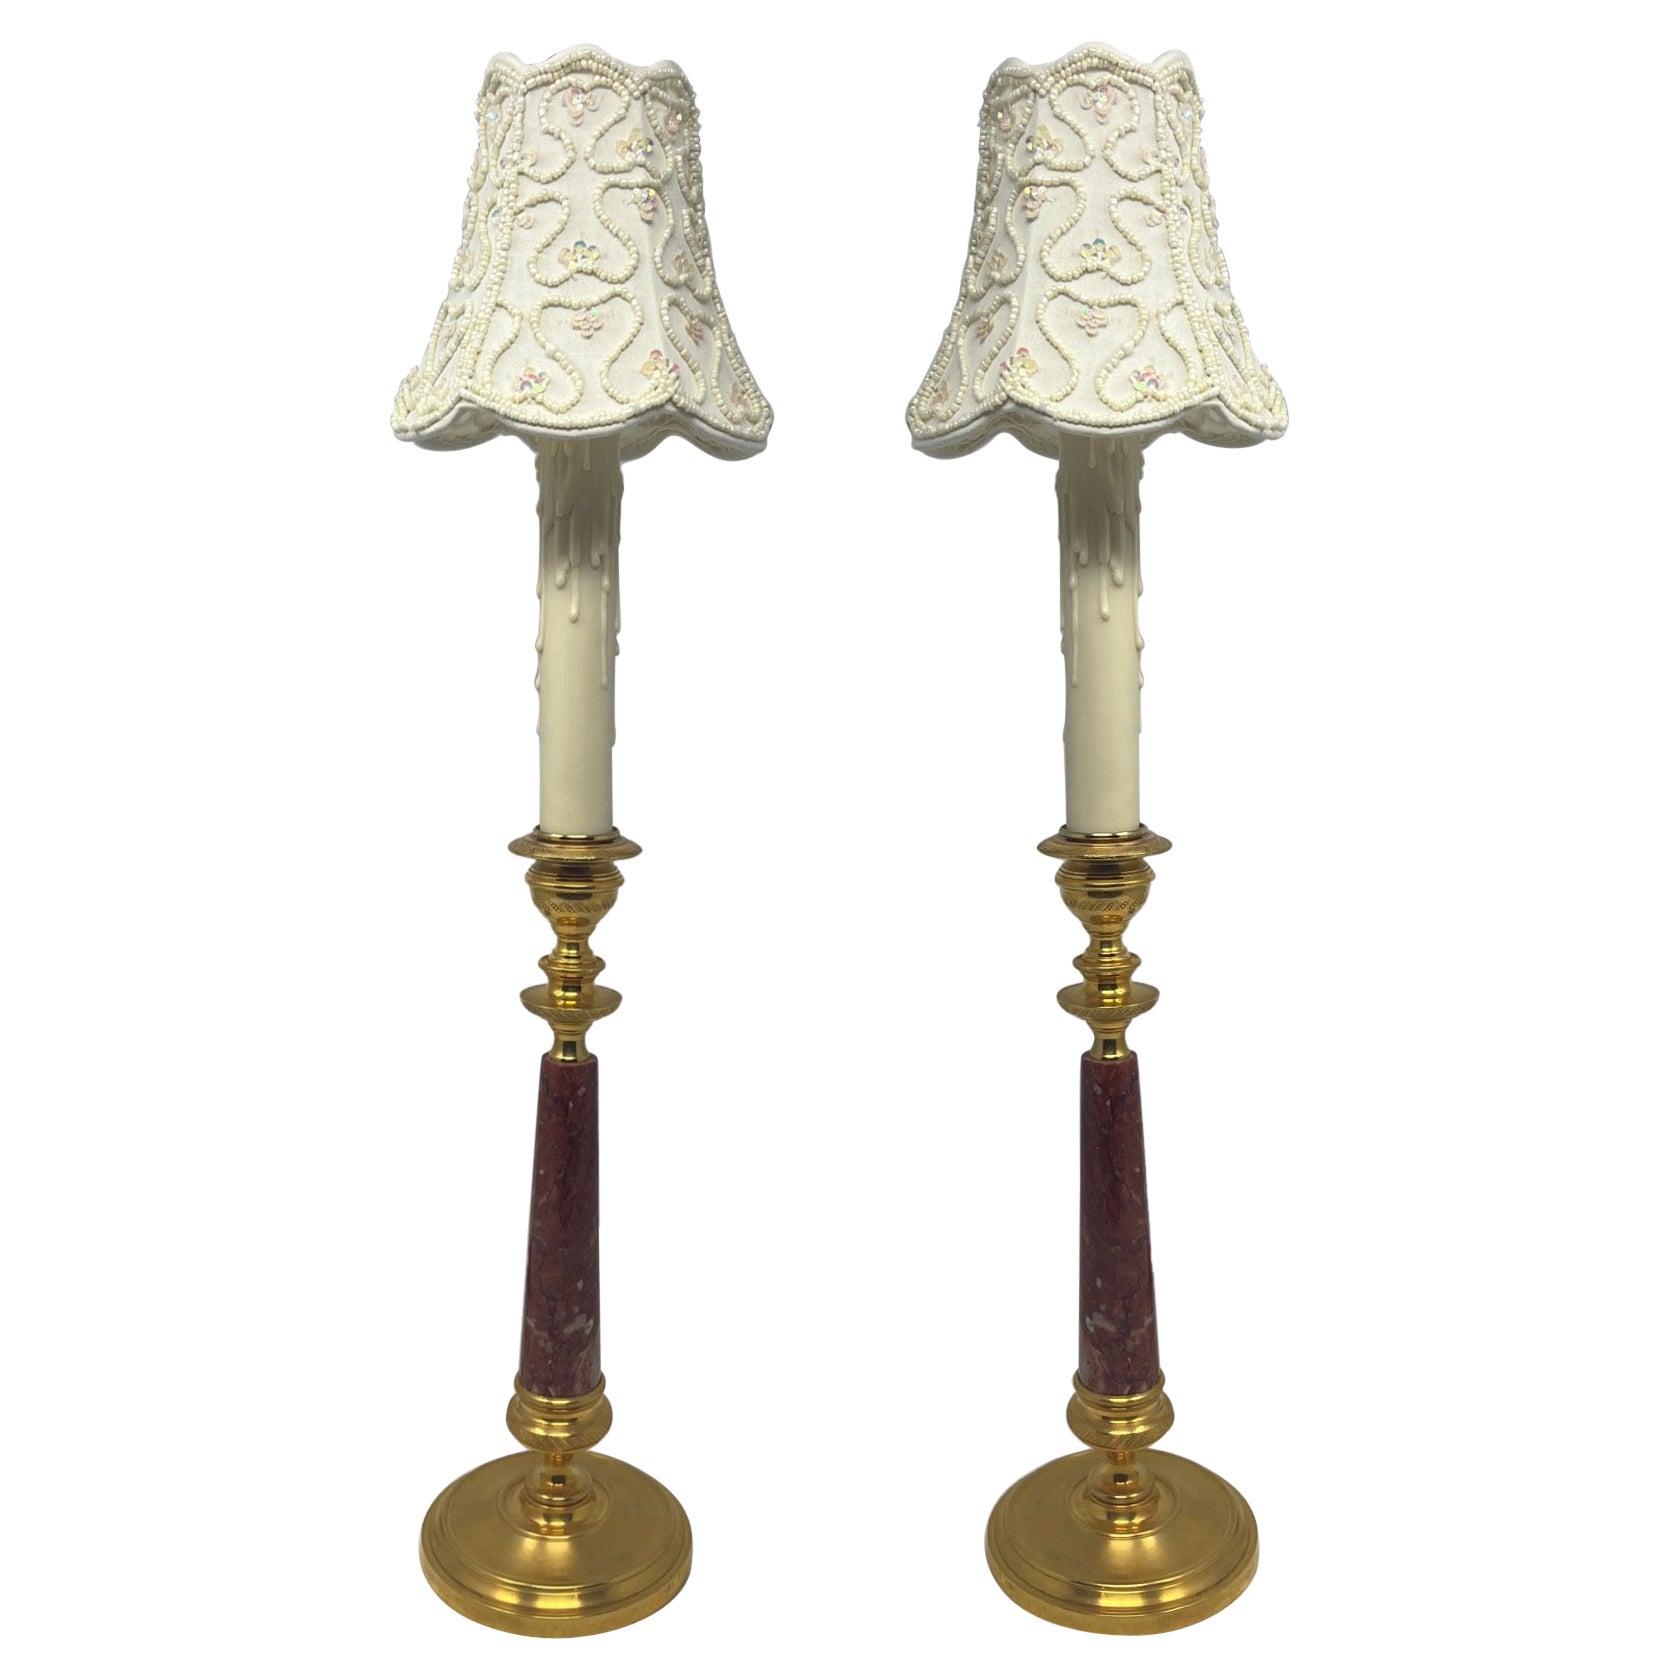 Paar antike französische Kerzenlampen aus rotem Marmor und Goldbronze, ca. 1890-1910.